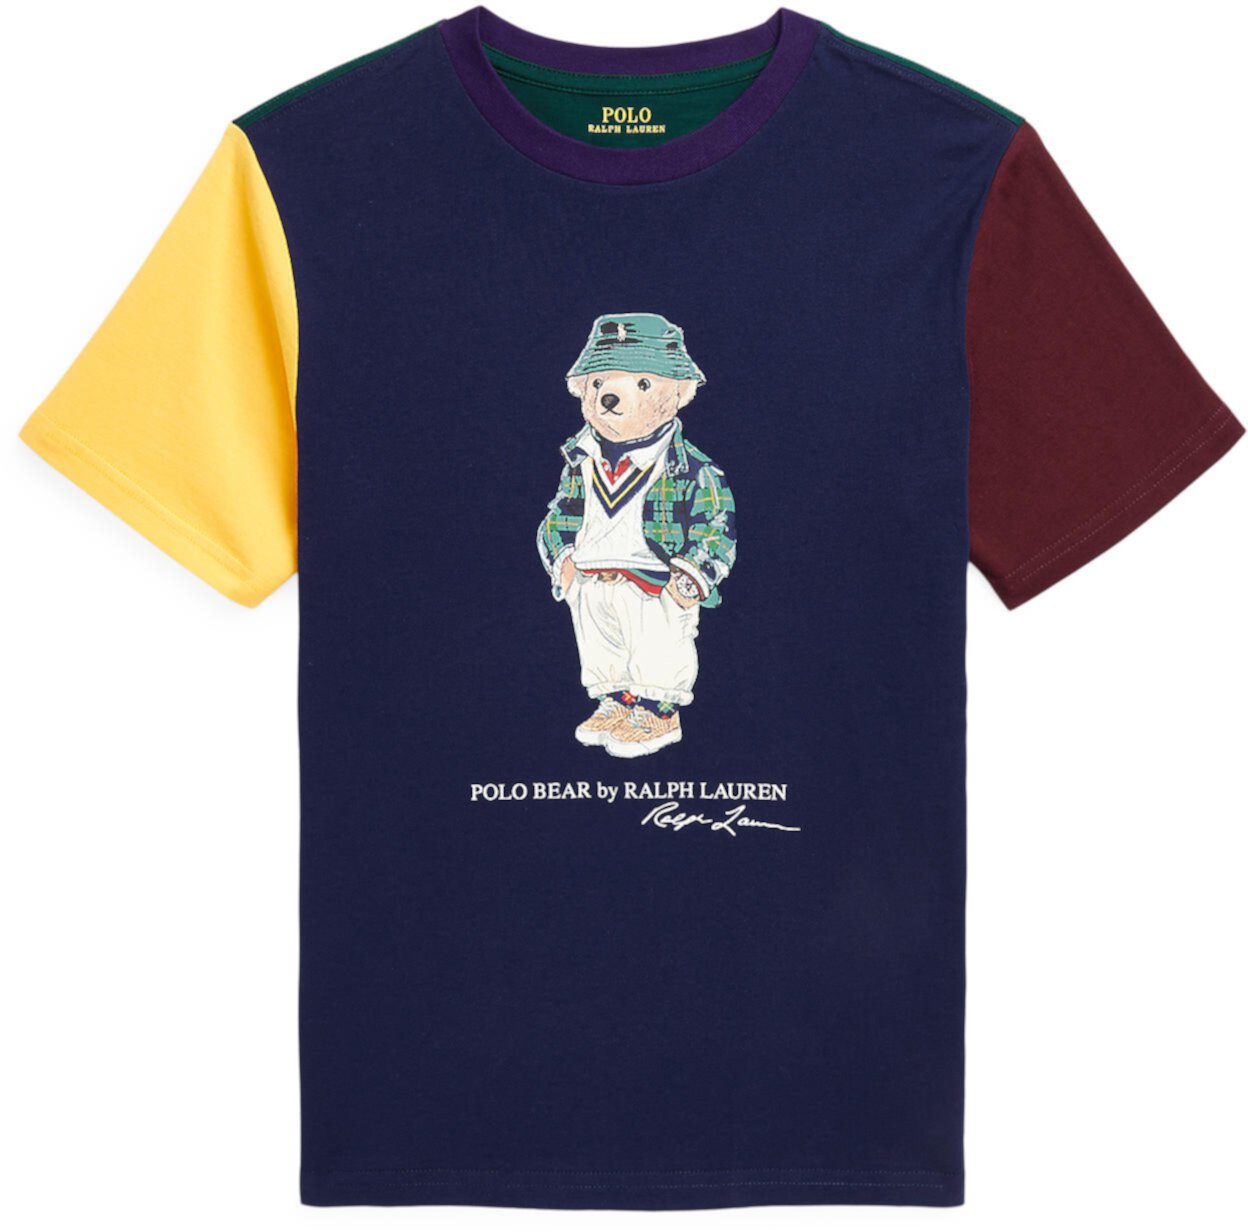 Хлопковая футболка с цветными блоками Polo Bear (для больших детей) Polo Ralph Lauren